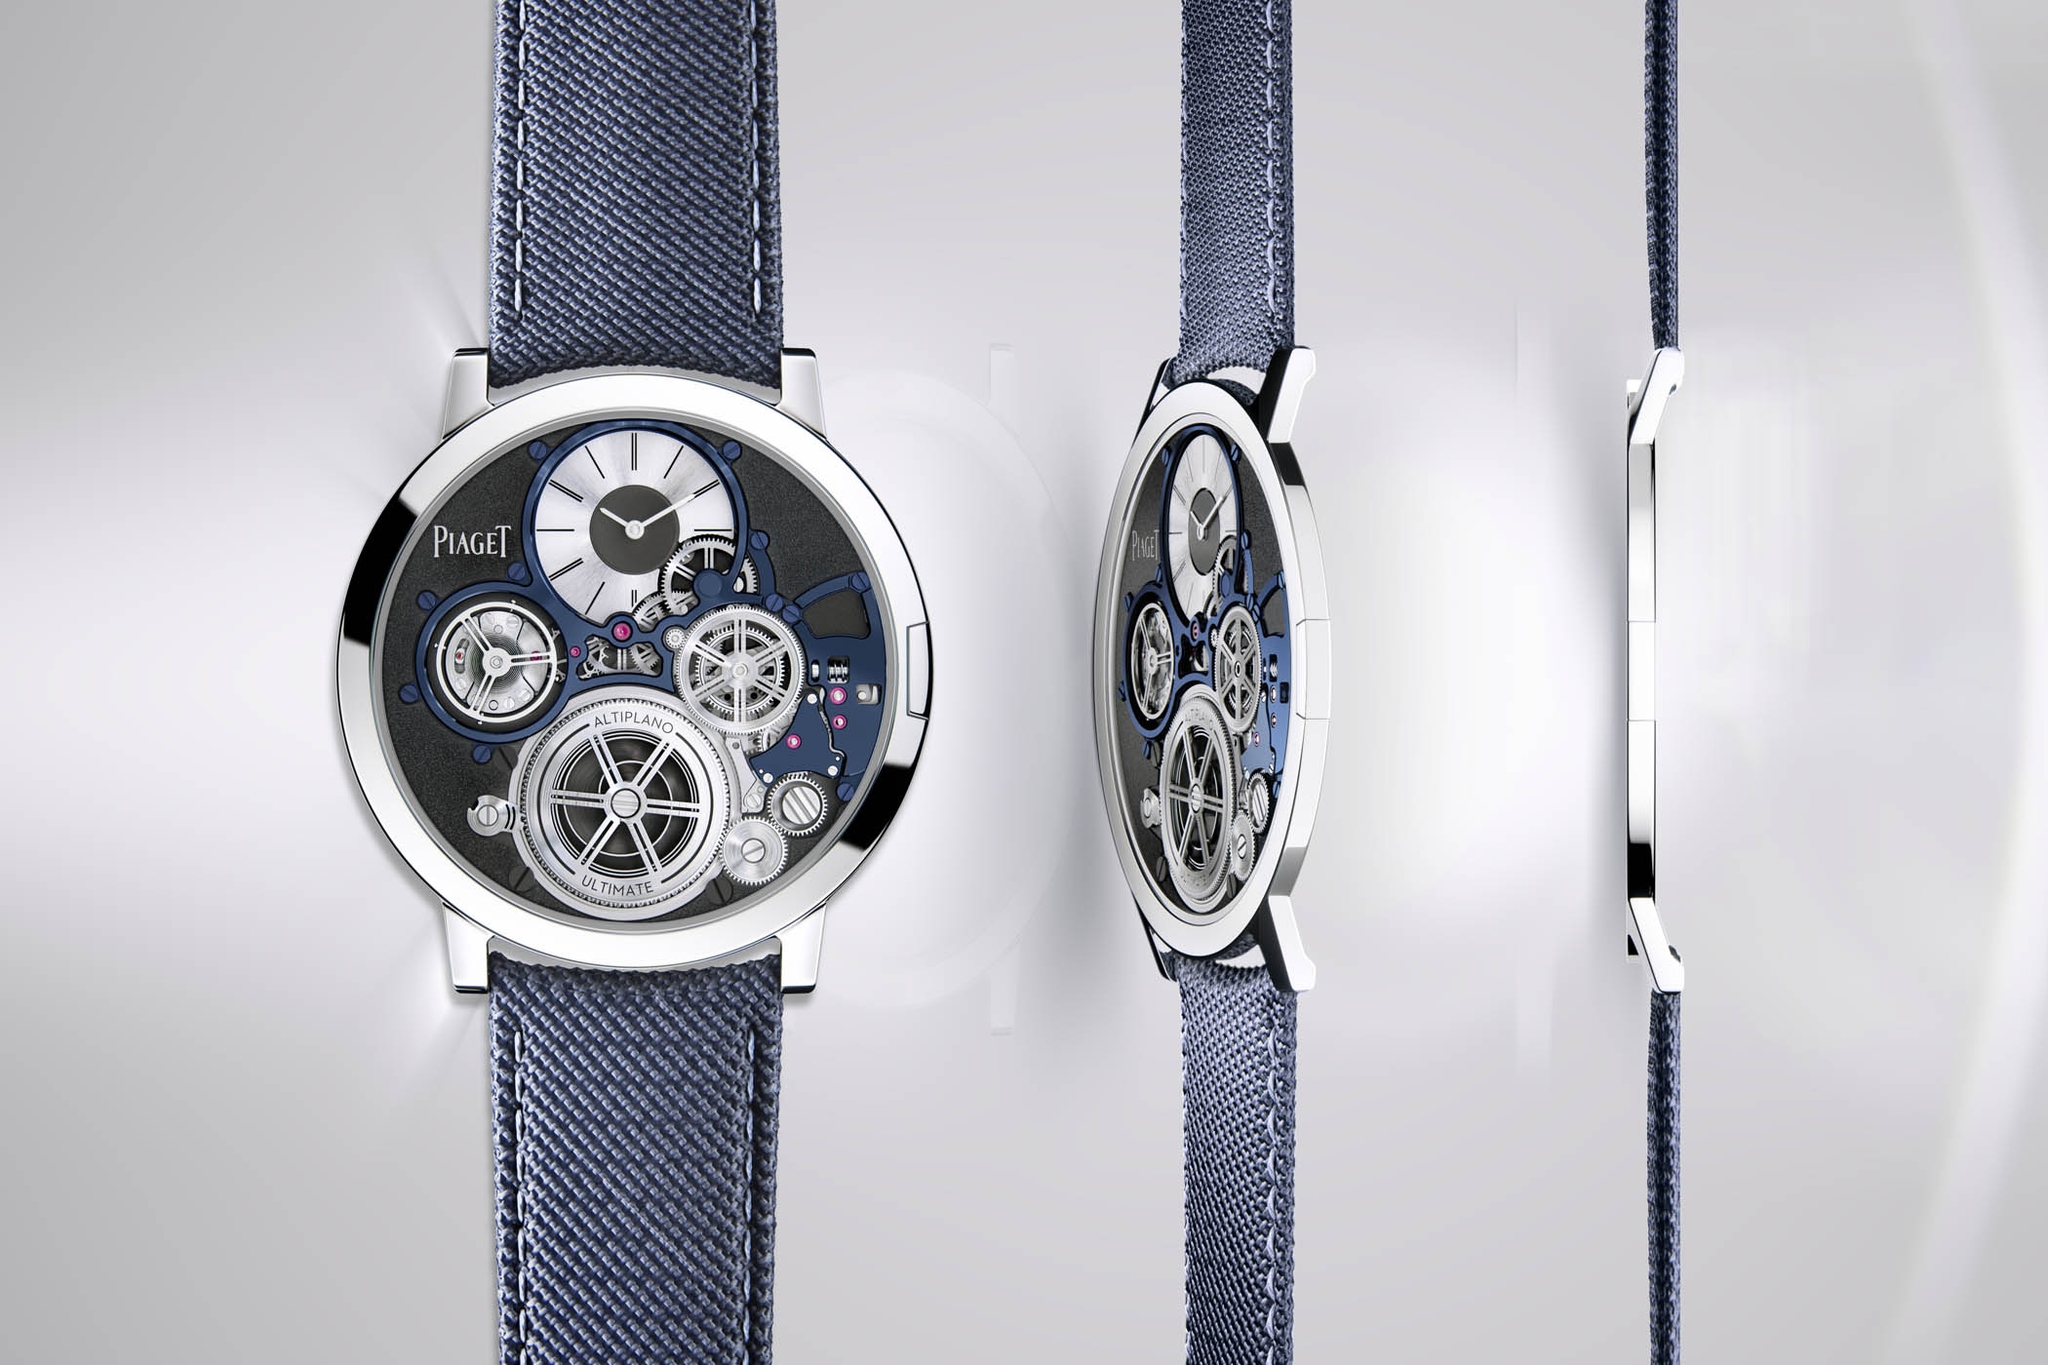 Phỏng vấn: Bí quyết để thương hiệu Piaget tạo ra được những chiếc đồng hồ siêu mỏng